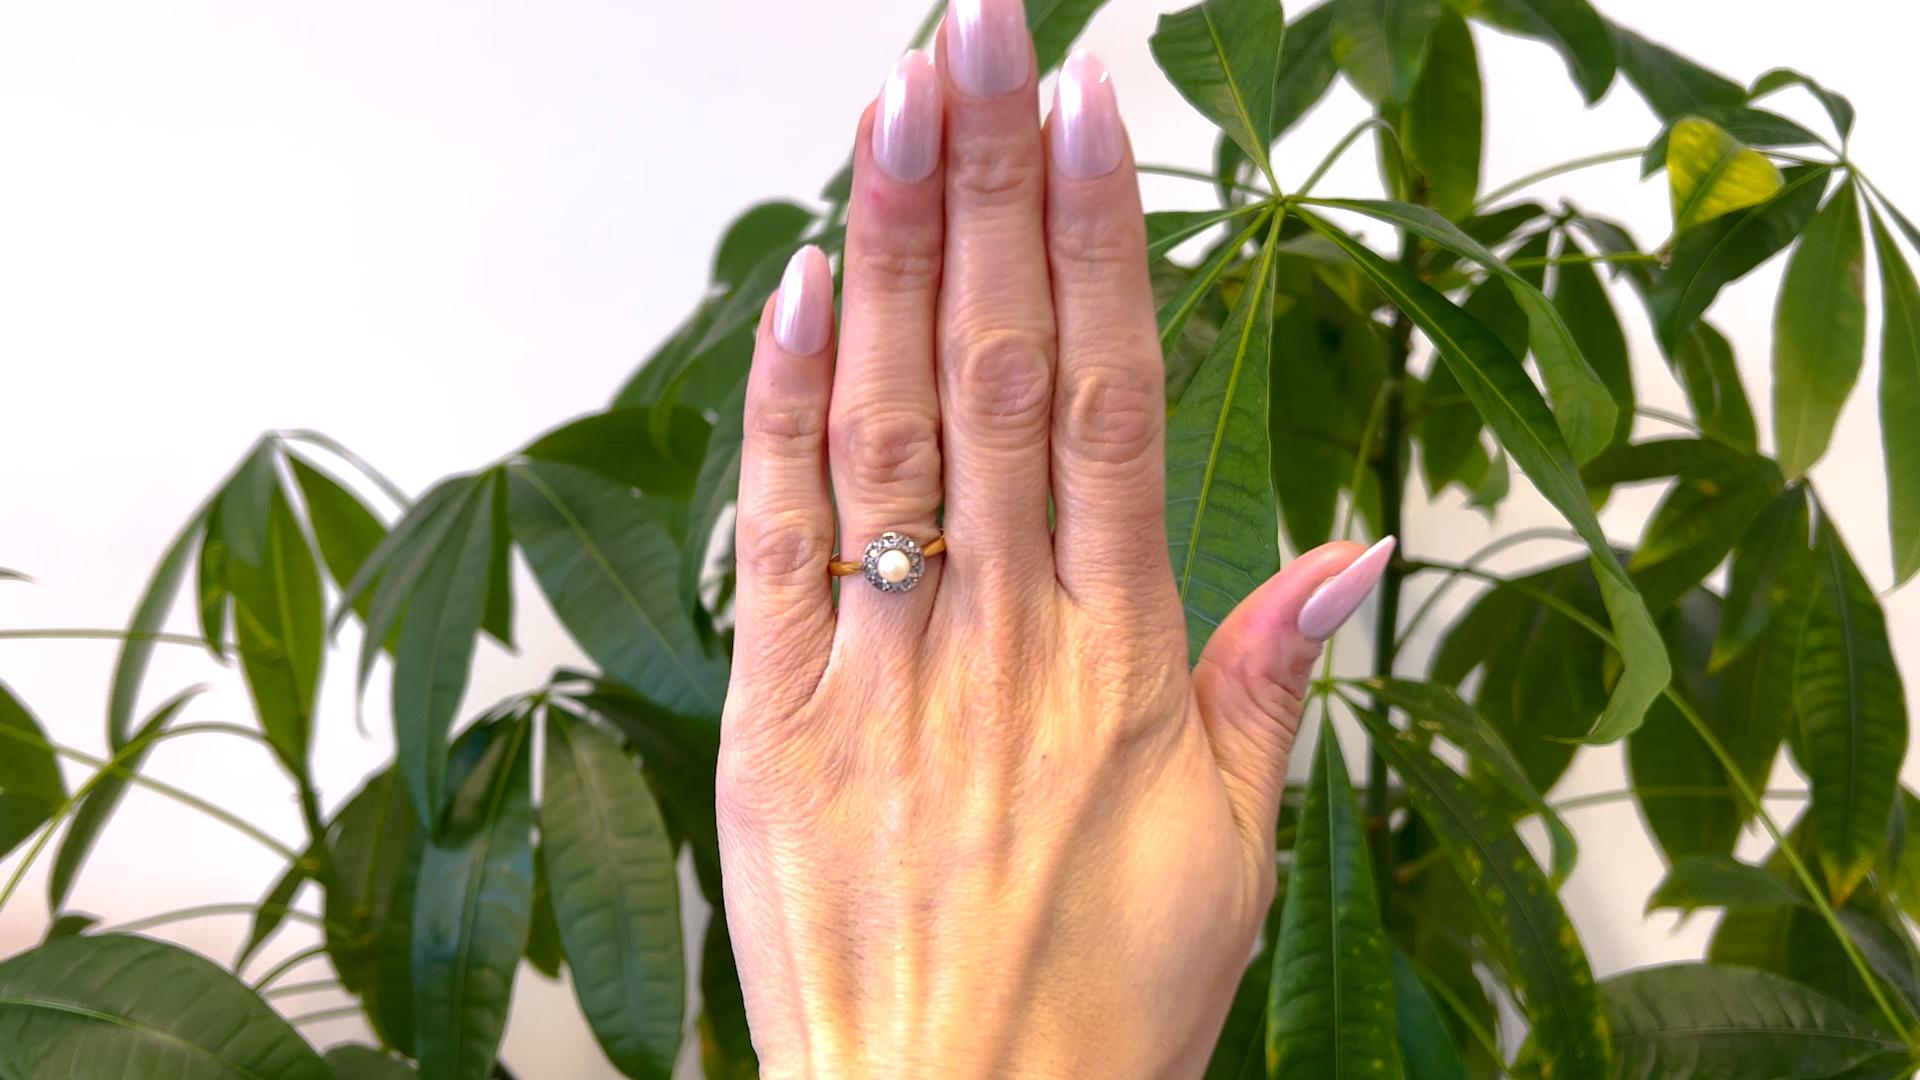 Eine Belle Époque Französisch Perle Diamant 18k Gelbgold Platin Ring. Mit einer cremefarbenen Perle von etwa 4,90 Millimetern. Akzentuiert durch acht Diamanten im Rosenschliff mit einem Gesamtgewicht von ca. 0,15 Karat, eingestuft in Farbe F-G und